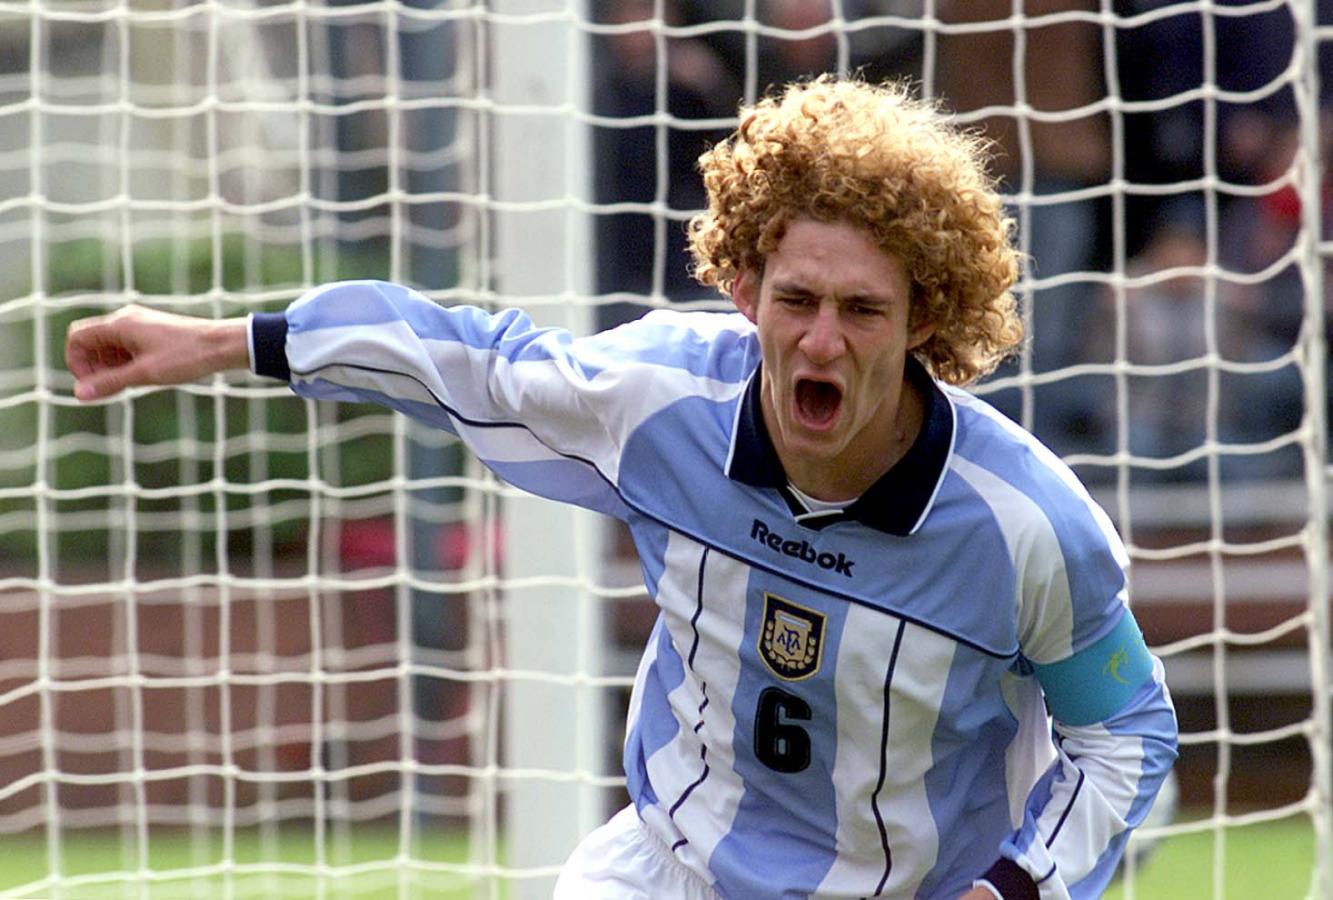 Imagen El Mundial Sub 20 en 2001, uno de los momentos más importantes de su carrera (FOTOBAIRES)